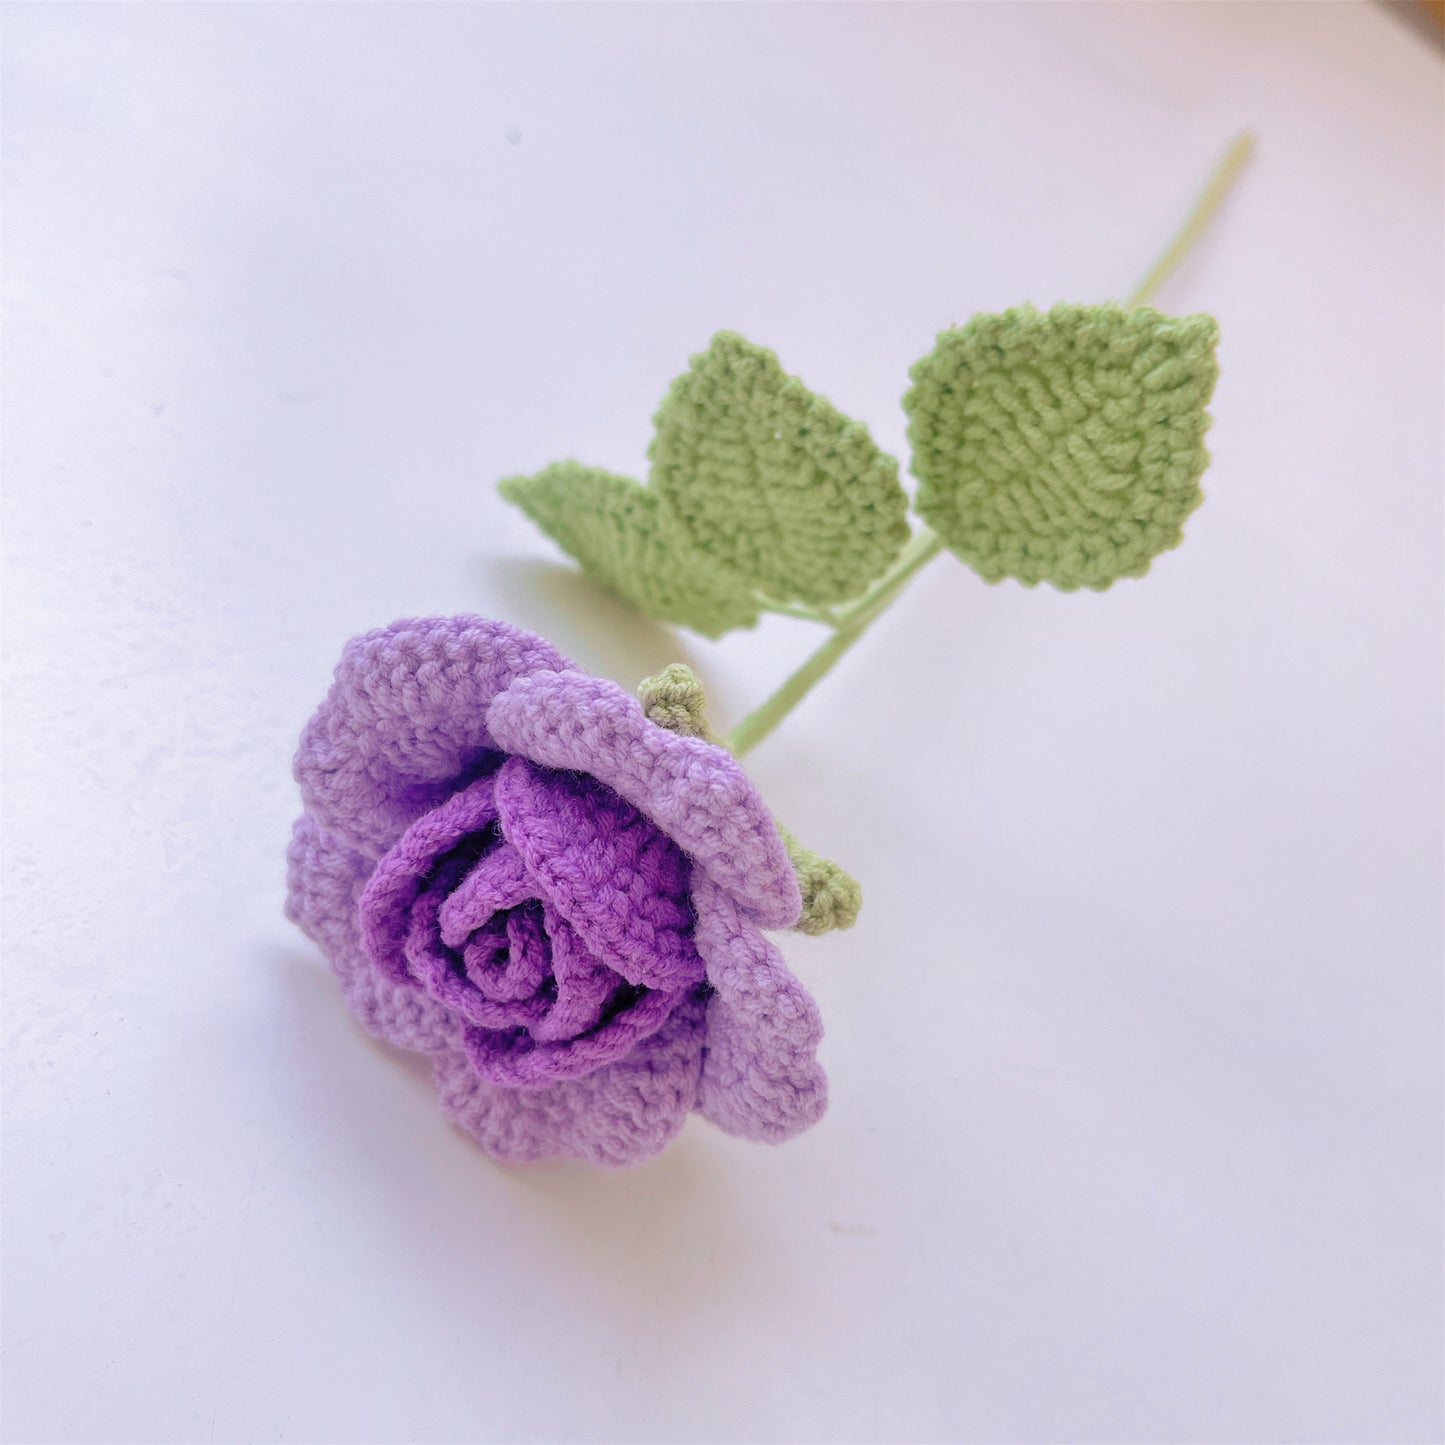 Rose Garden Delight : roses au crochet fabriquées à la main pour une charmante décoration d'intérieur